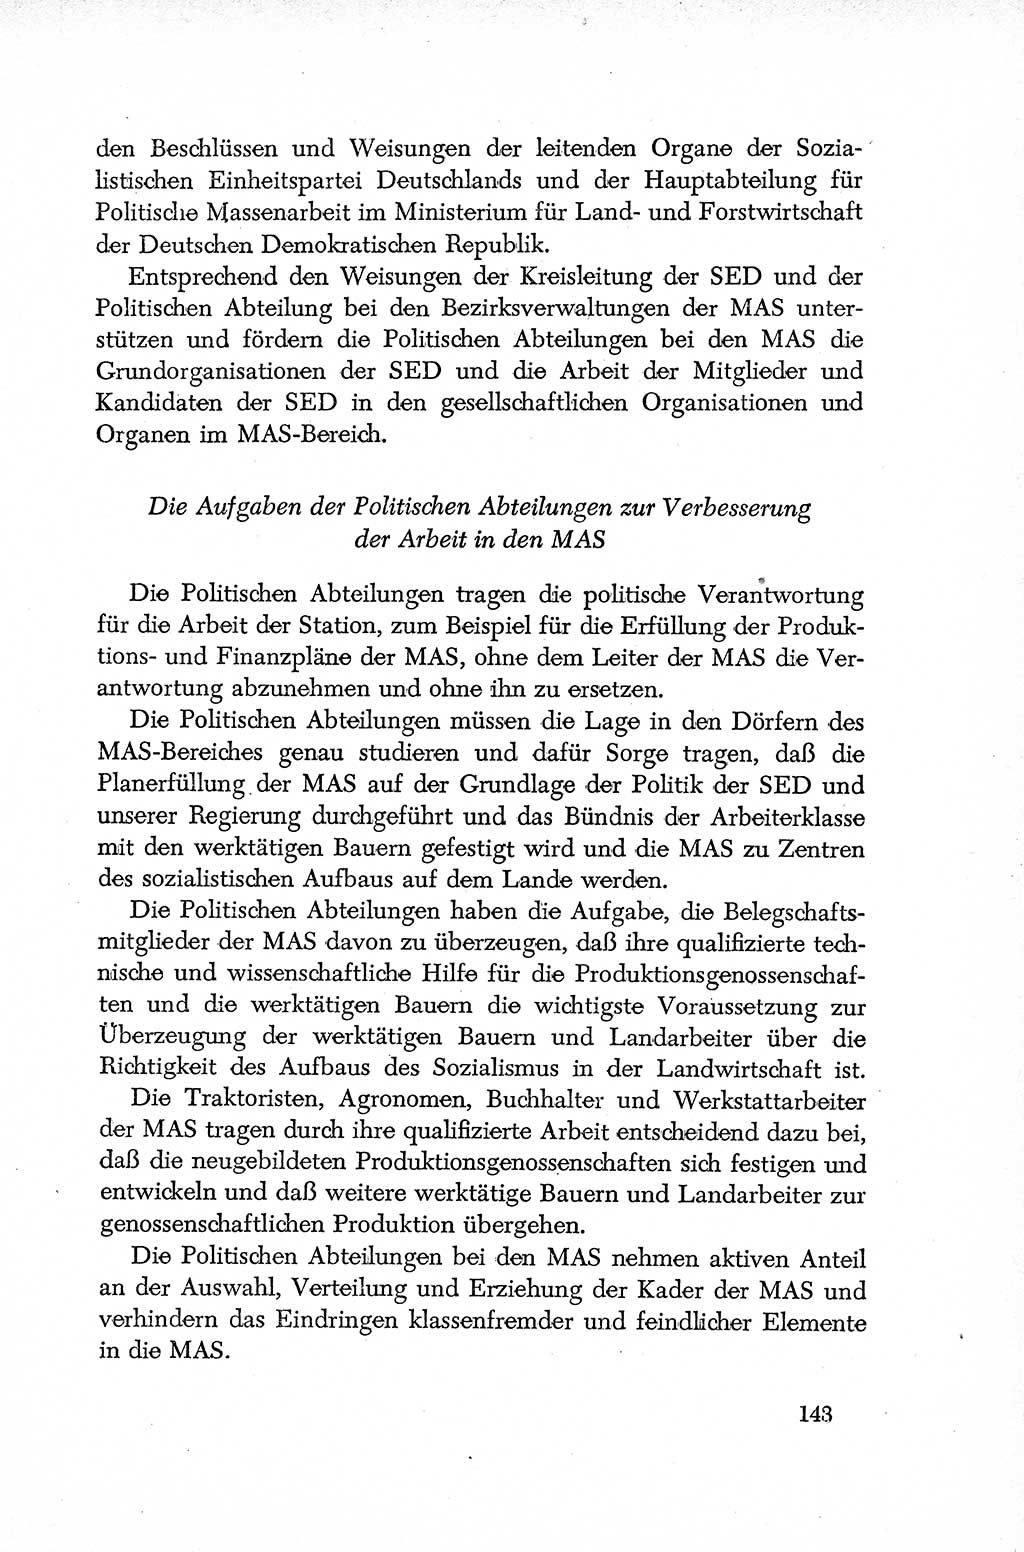 Dokumente der Sozialistischen Einheitspartei Deutschlands (SED) [Deutsche Demokratische Republik (DDR)] 1952-1953, Seite 143 (Dok. SED DDR 1952-1953, S. 143)